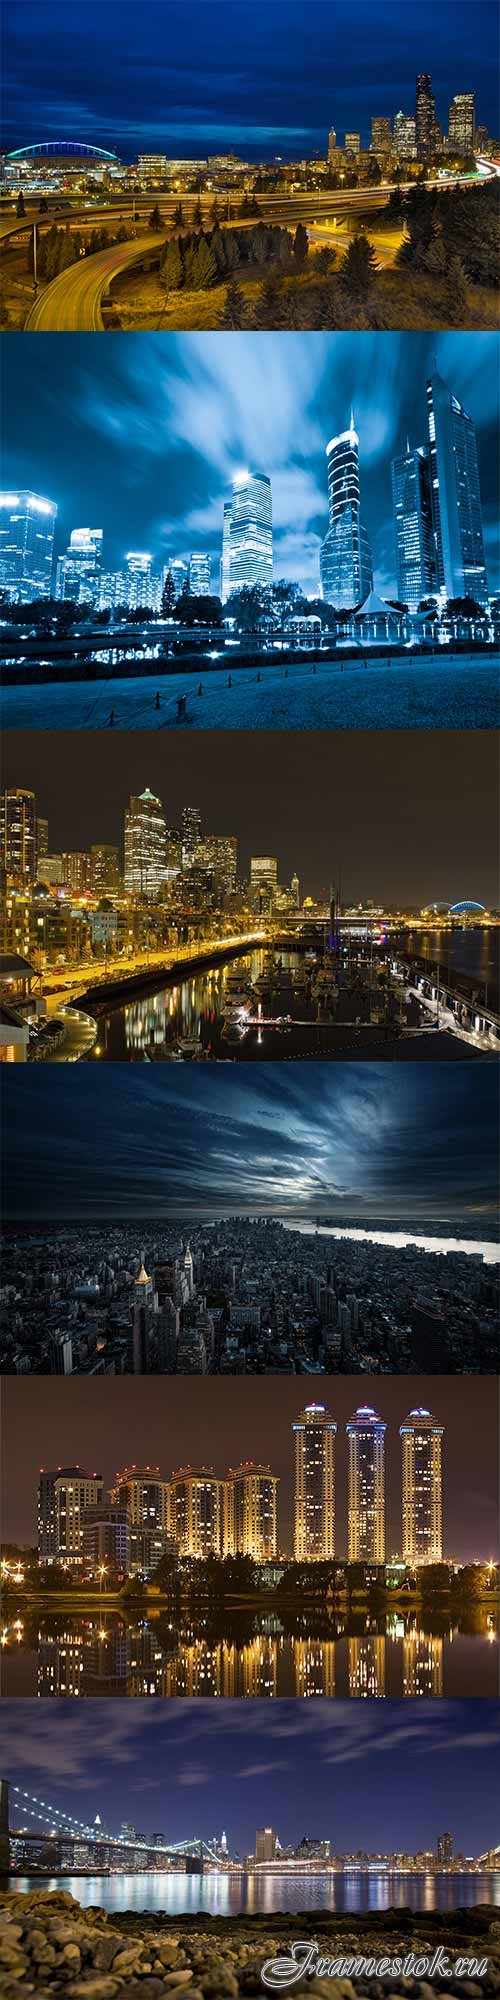 Night city lights raster graphics